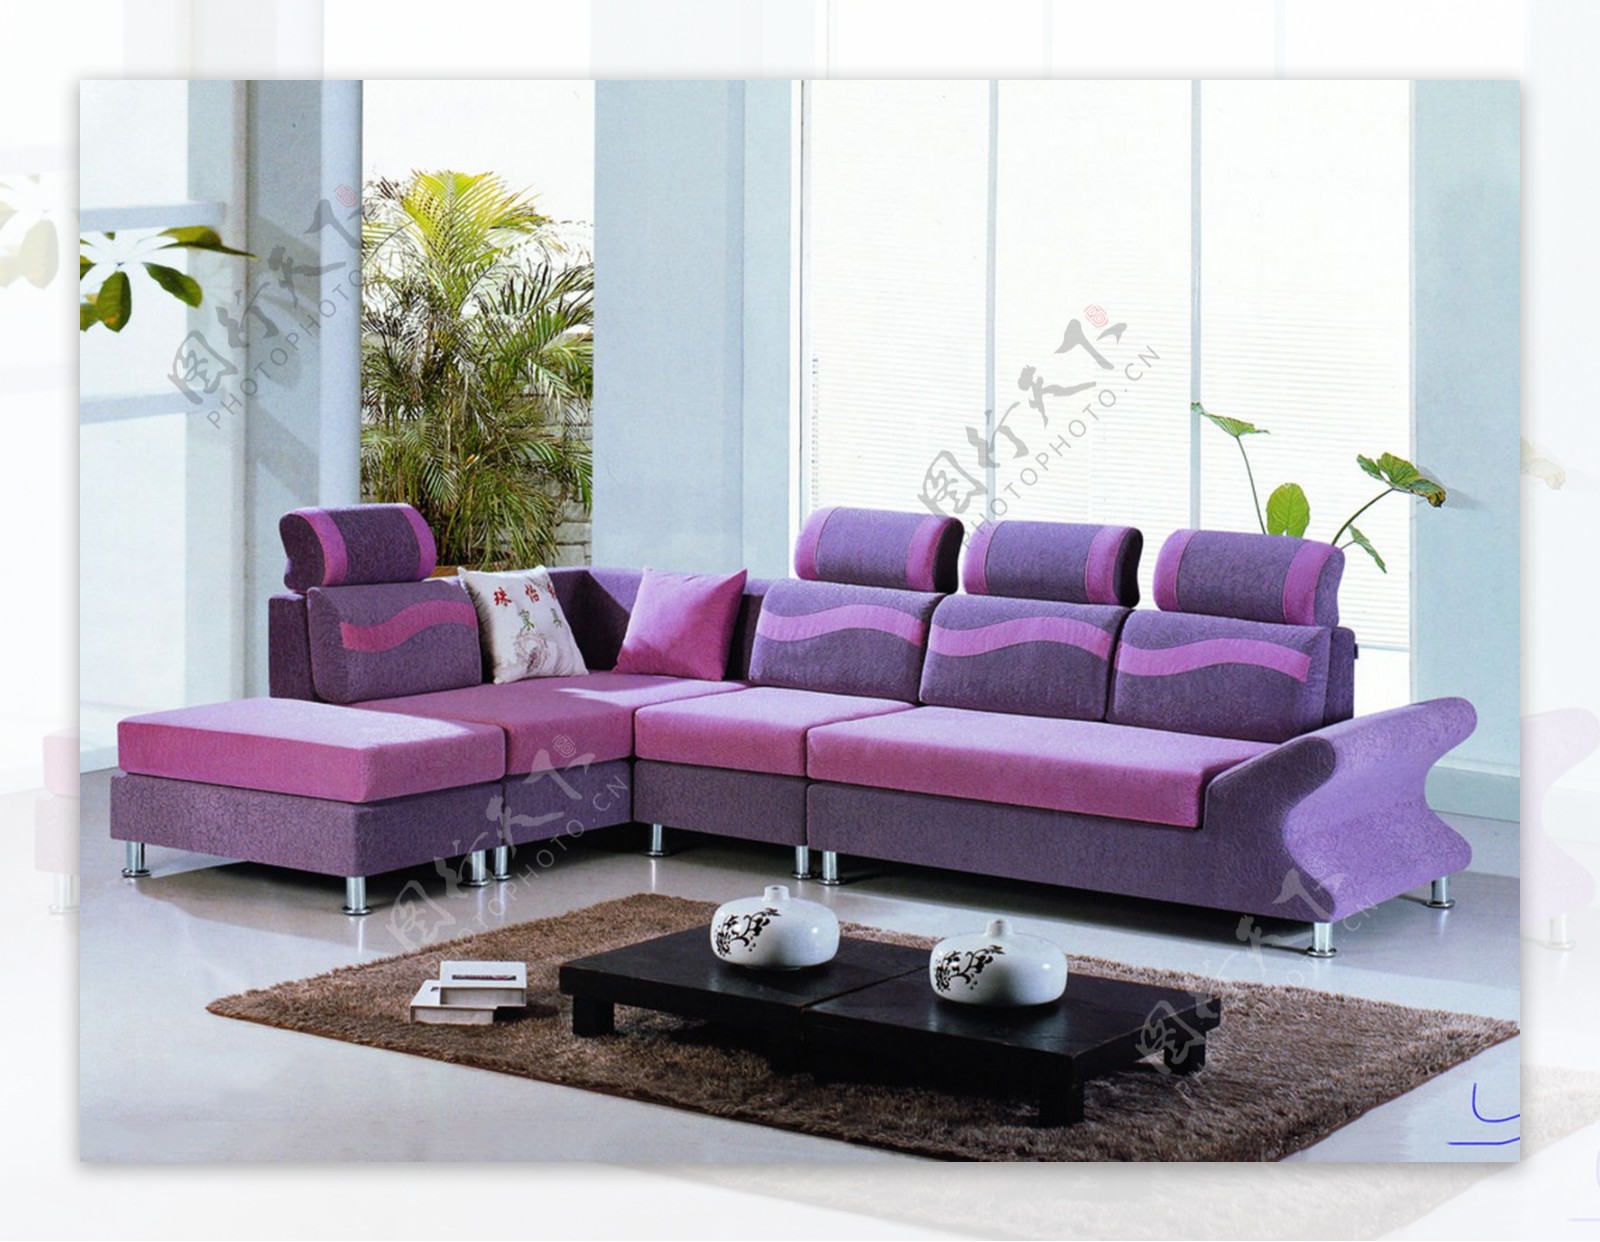 紫色沙发